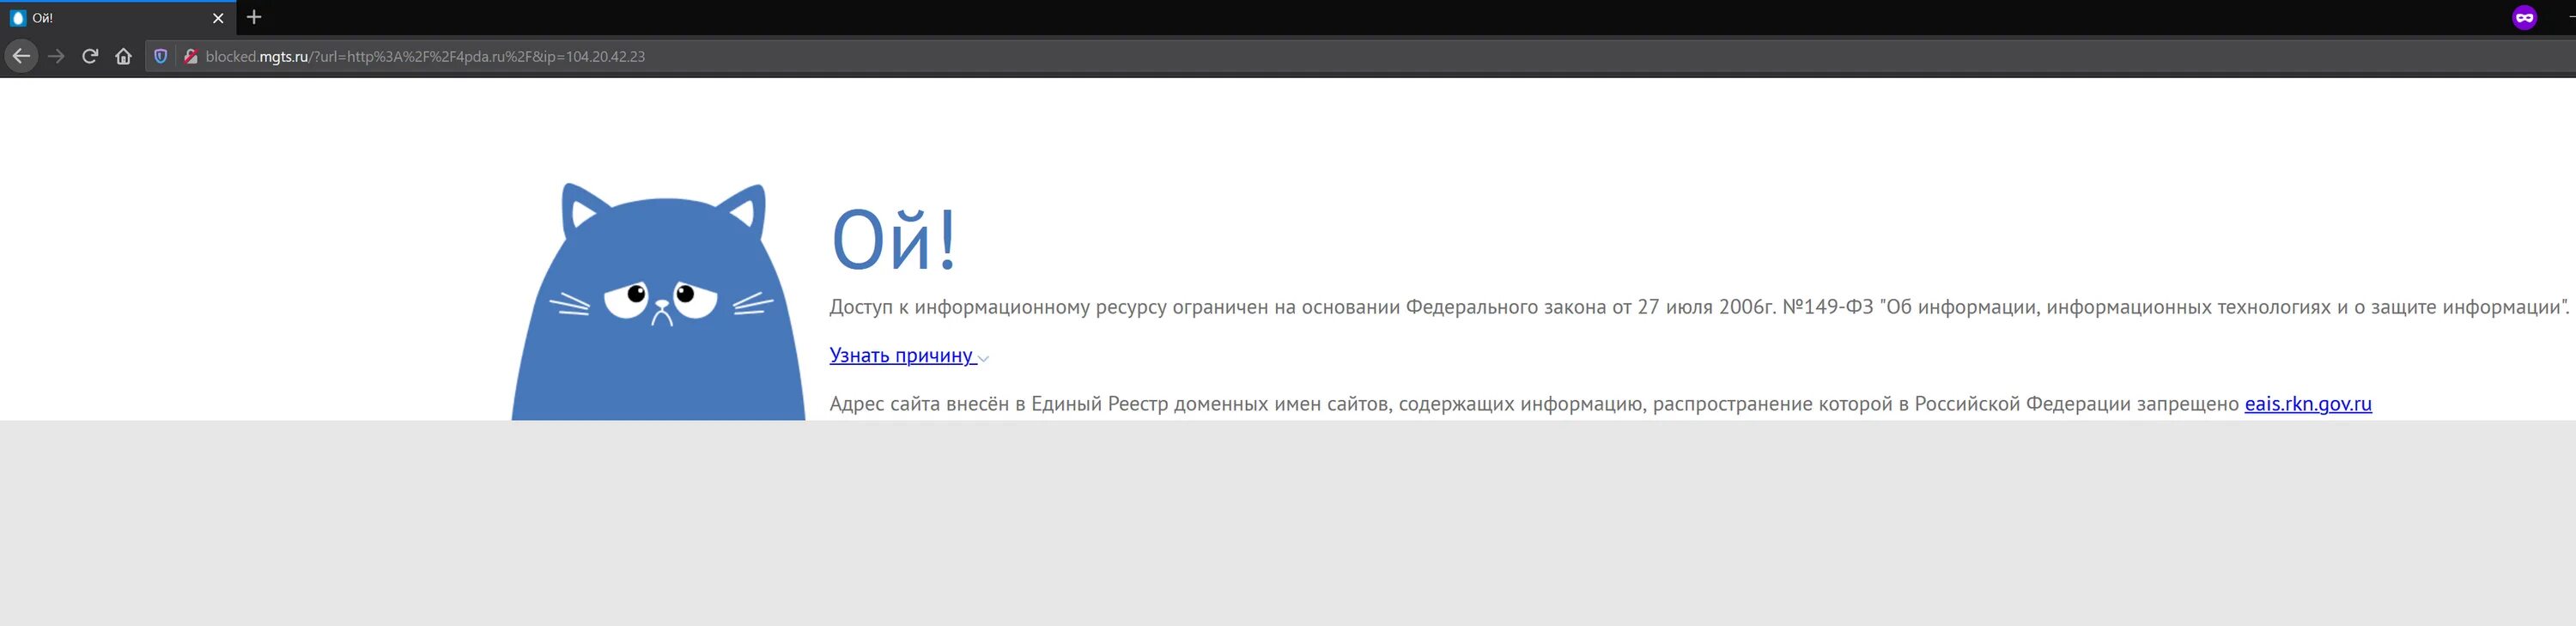 Блокировка сайтов. Что заблокировали в России. Заблокированные сайты в России. Забанен в РФ. Сайты будут блокировать